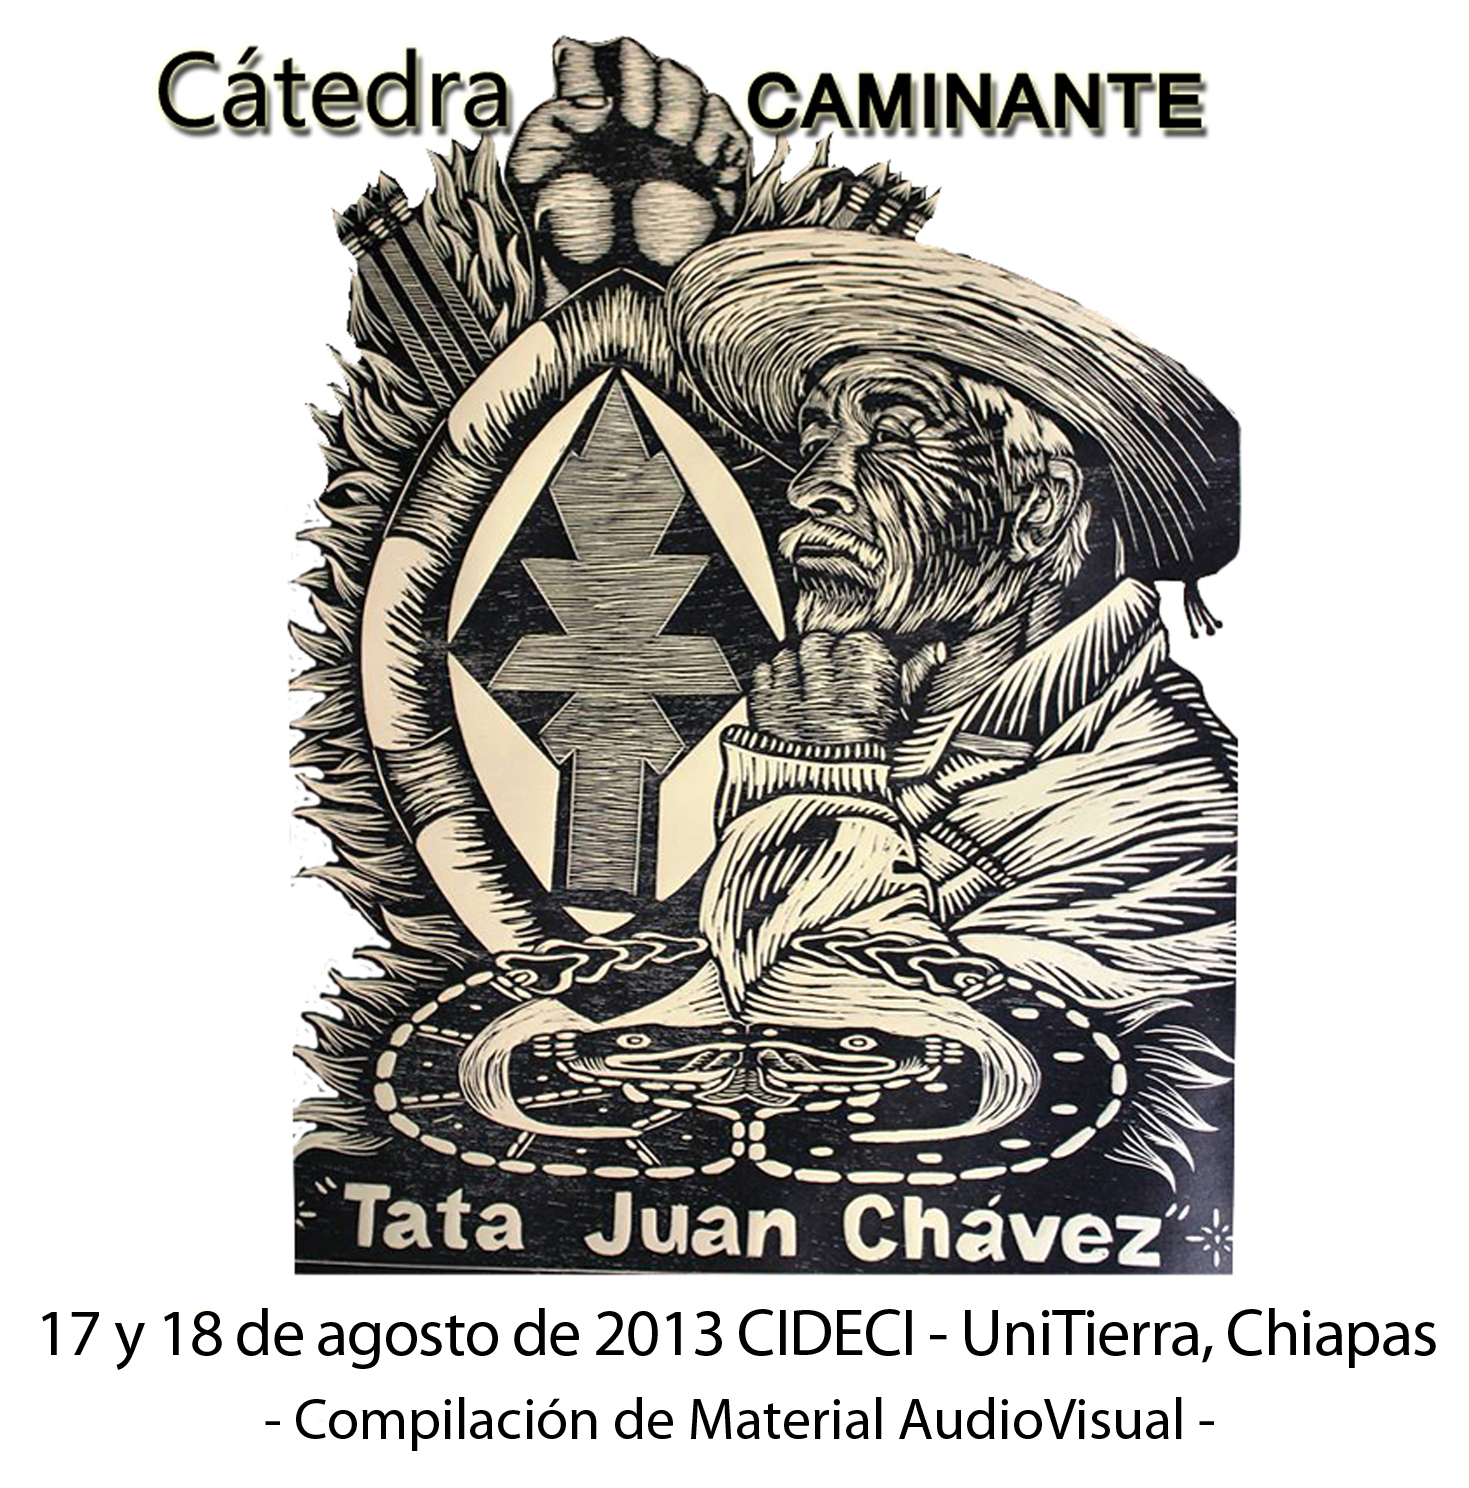 Ya está arriba la compilación de la Cátedra Tata Chávez realizada el pasado 17 y 18 de agosto de 2013 en CIDECI Unitierra, Chiapas. En ella encontrarás Audios, Textos, Fotos […]